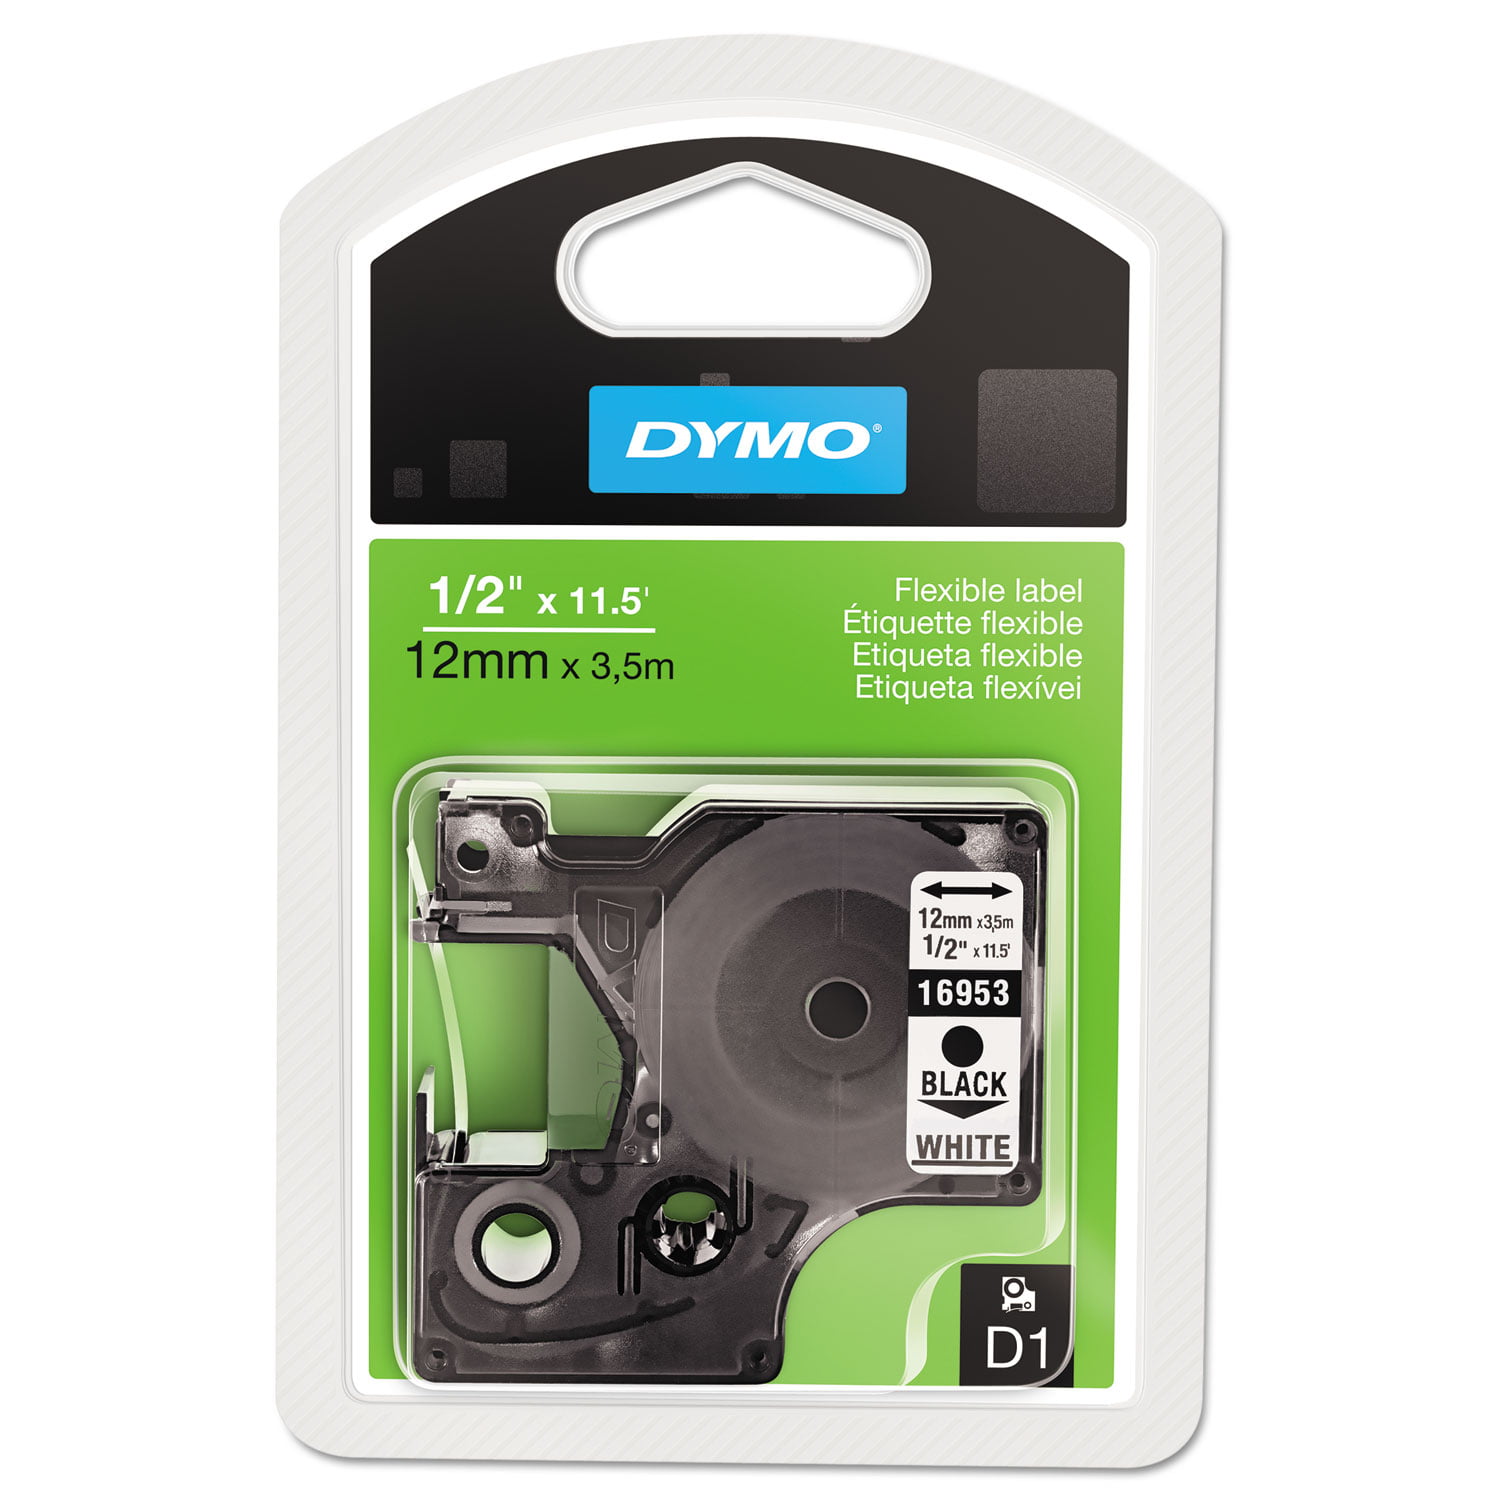 Senator sort Addition Dymo D1 Flexible Nylon Label Maker Tape, 0.5" X 11.5 Ft, Black On White -  Walmart.com